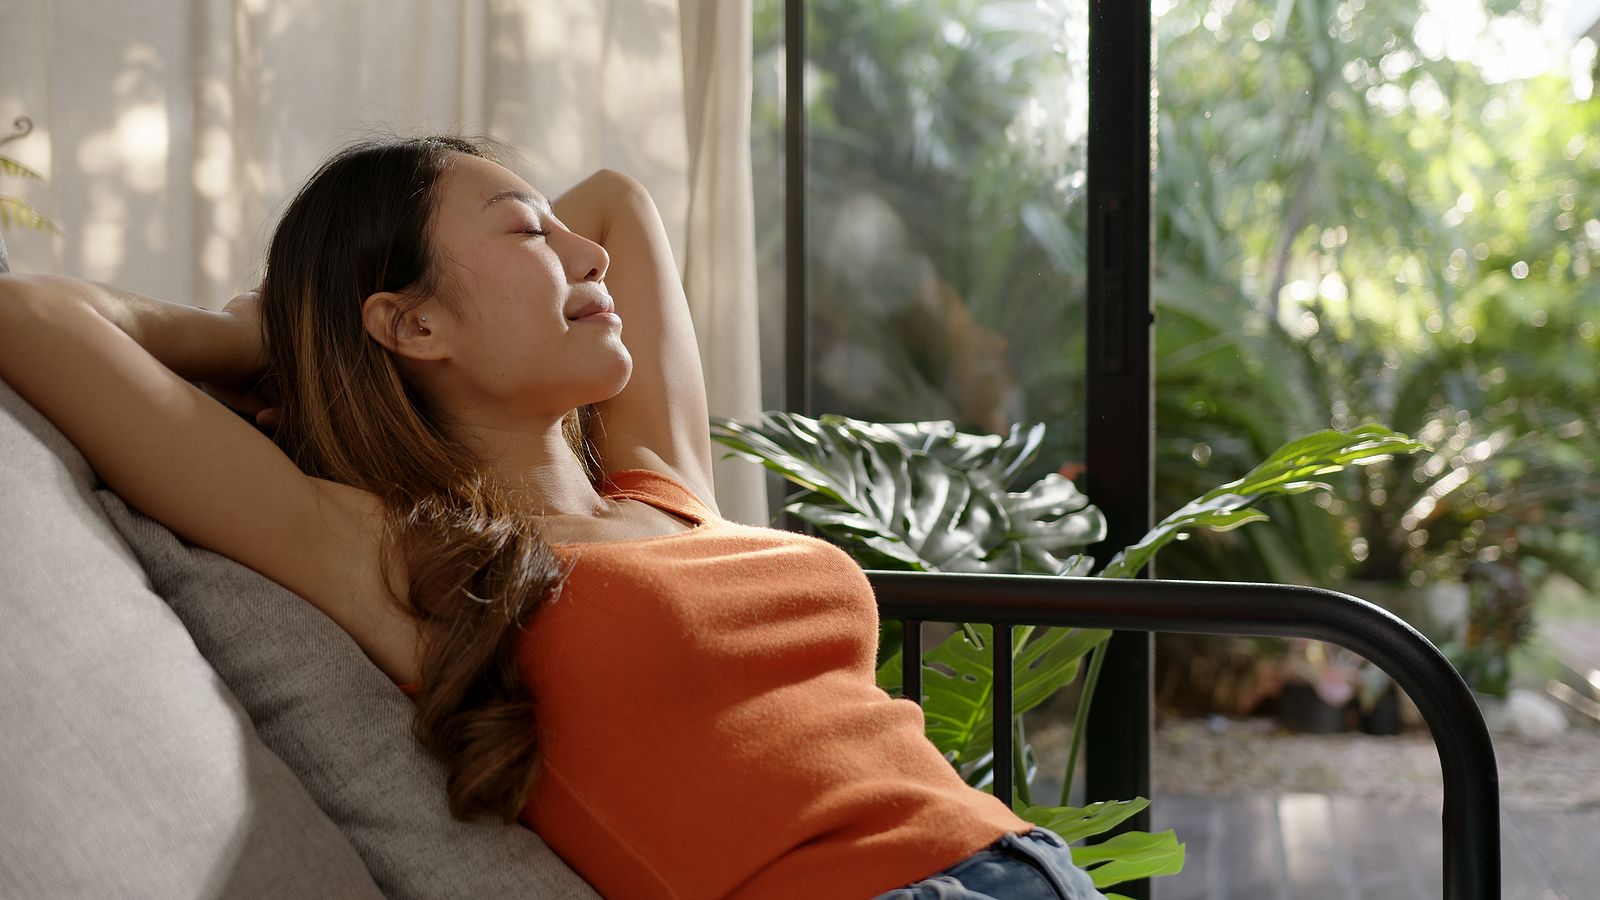 Formas naturales y económicas de refrescar nuestra casa. Mujer respirando aire fresco Foto: bigstock